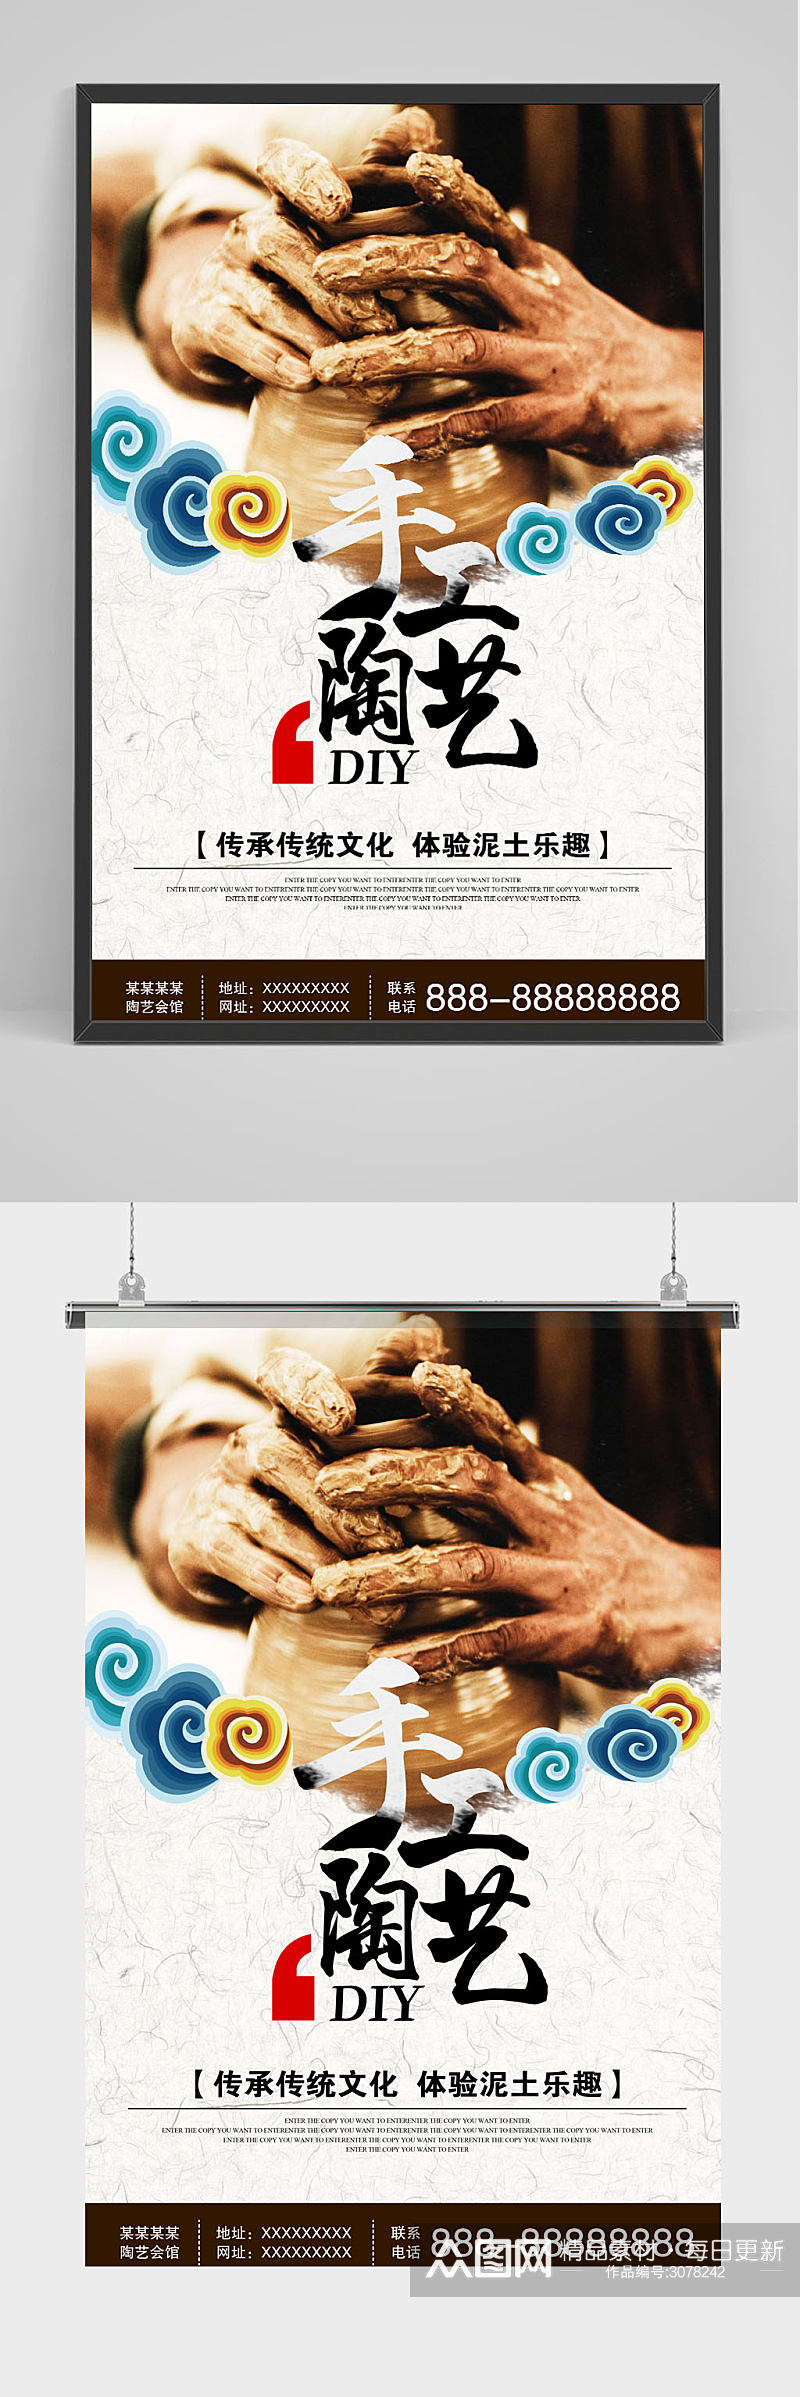 手工陶艺DIY中国风海报素材